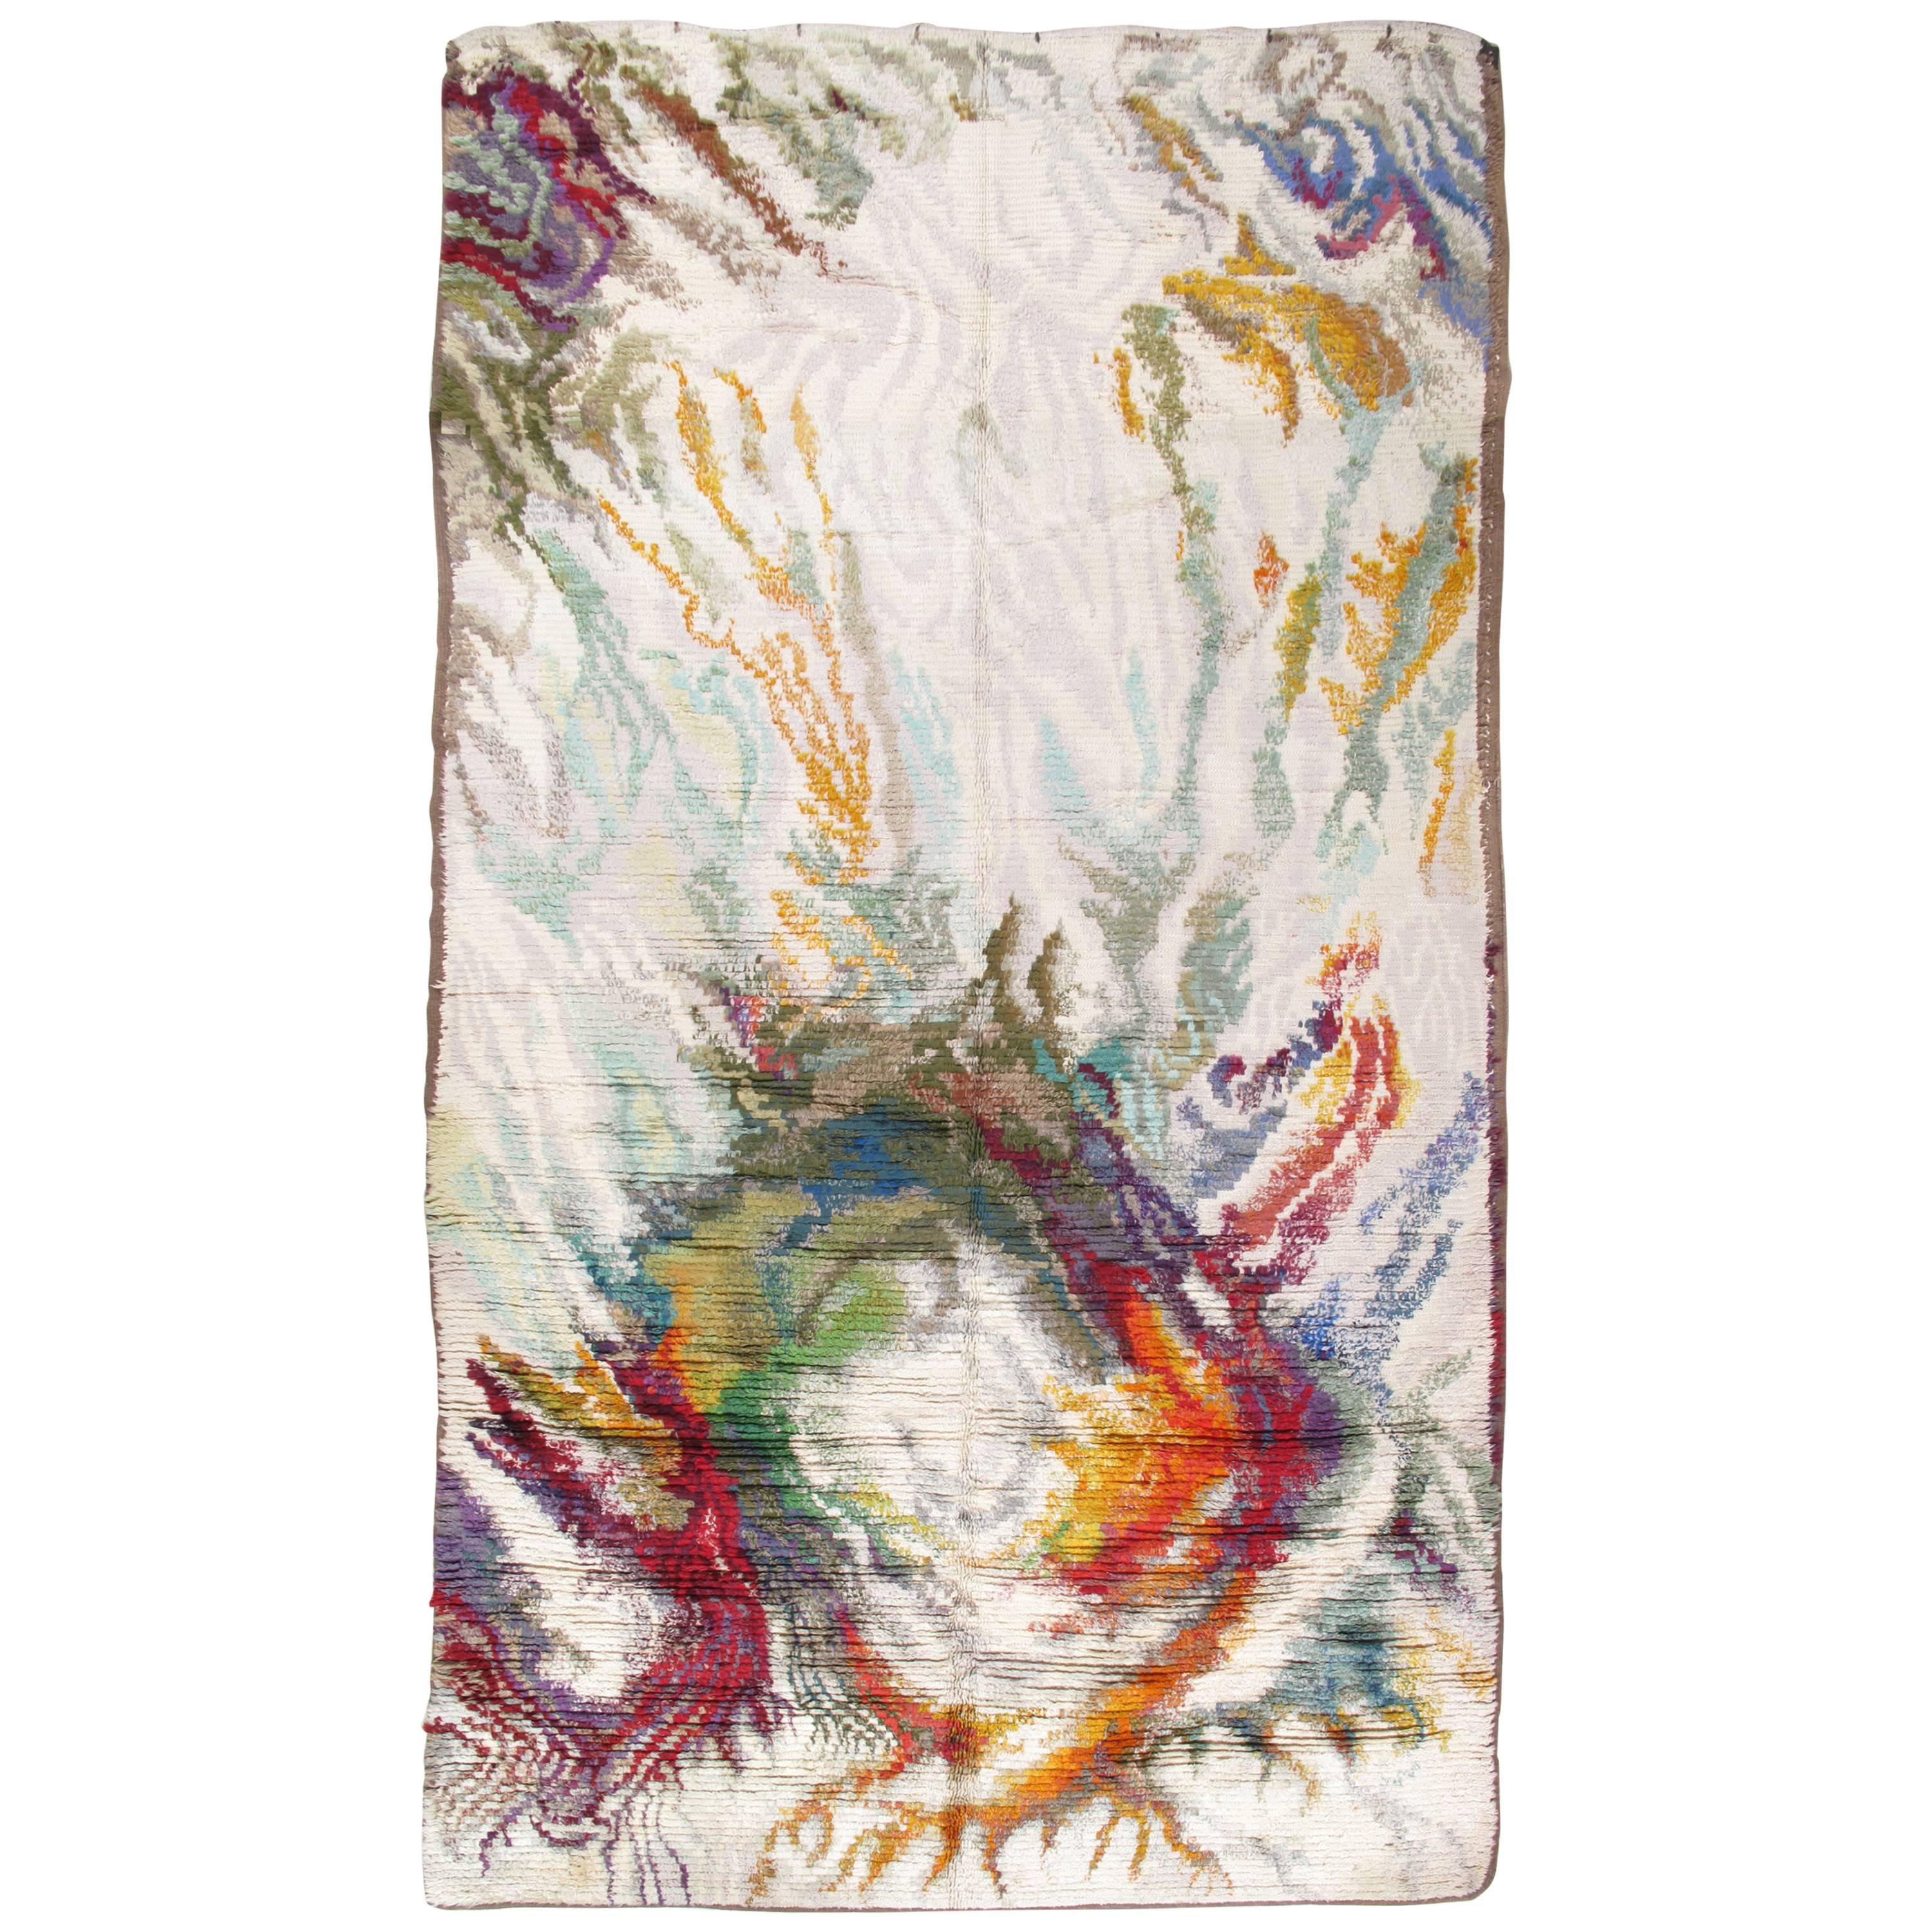 Tapis Rya fait main, tapis de laine multicolore, coloré, vibrant, blanc